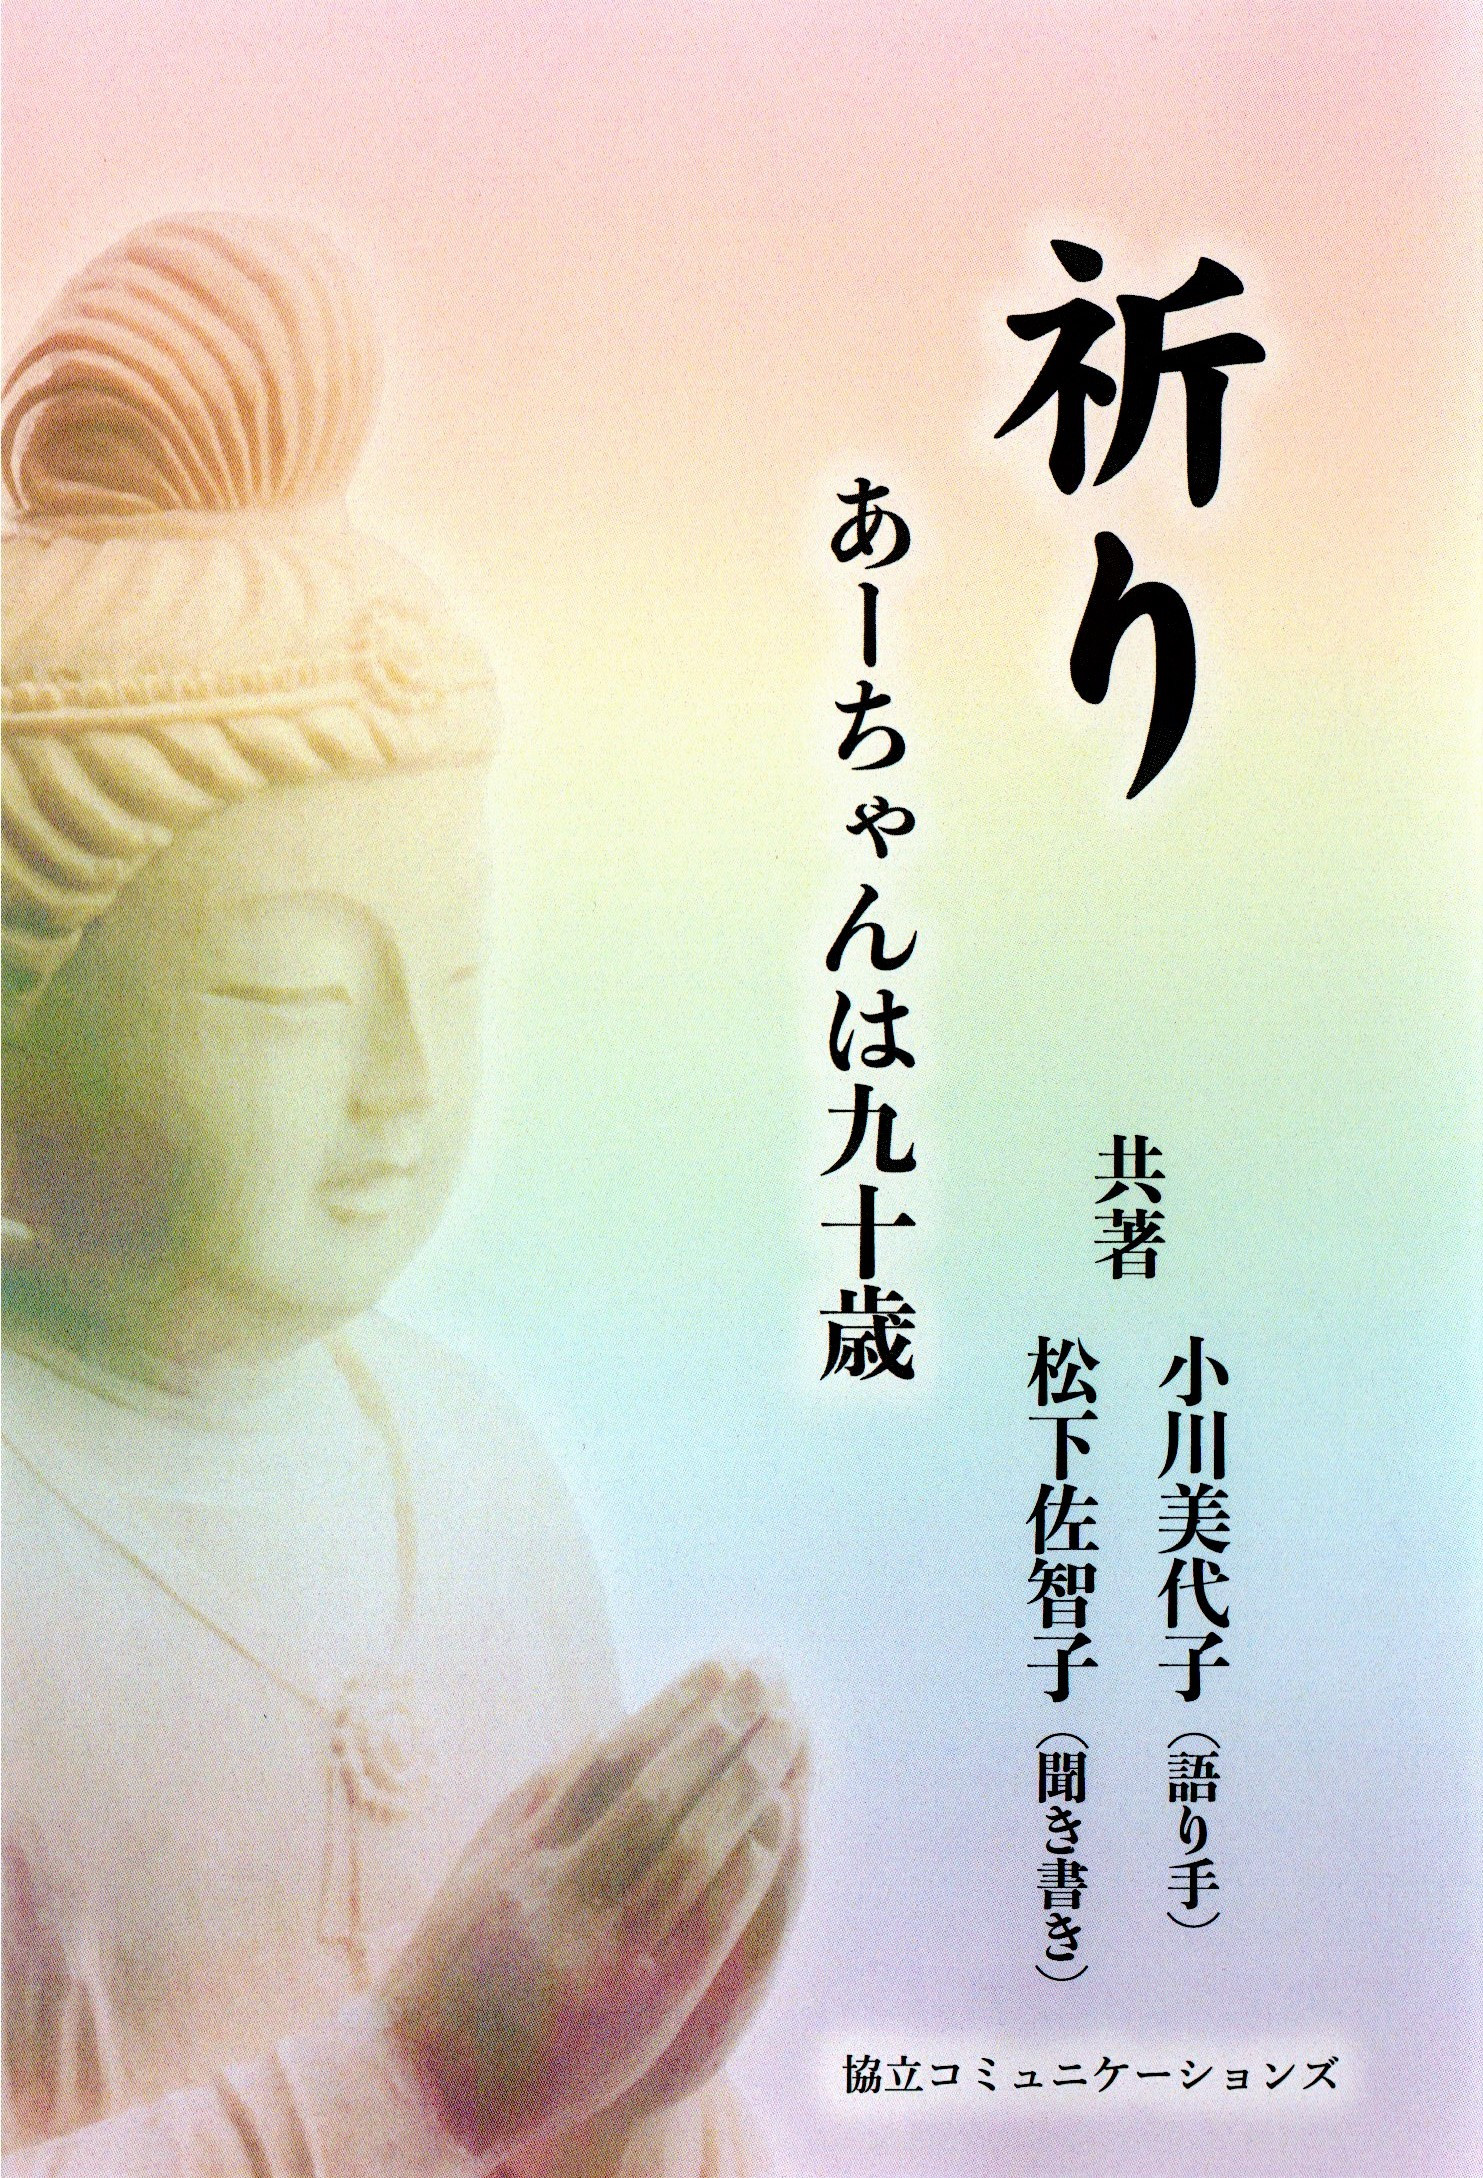 弊社の新刊『祈りーあーちゃんは九十歳』小川 美代子 ・ 松下 佐智子 (共著)が10月25日に発売されました。